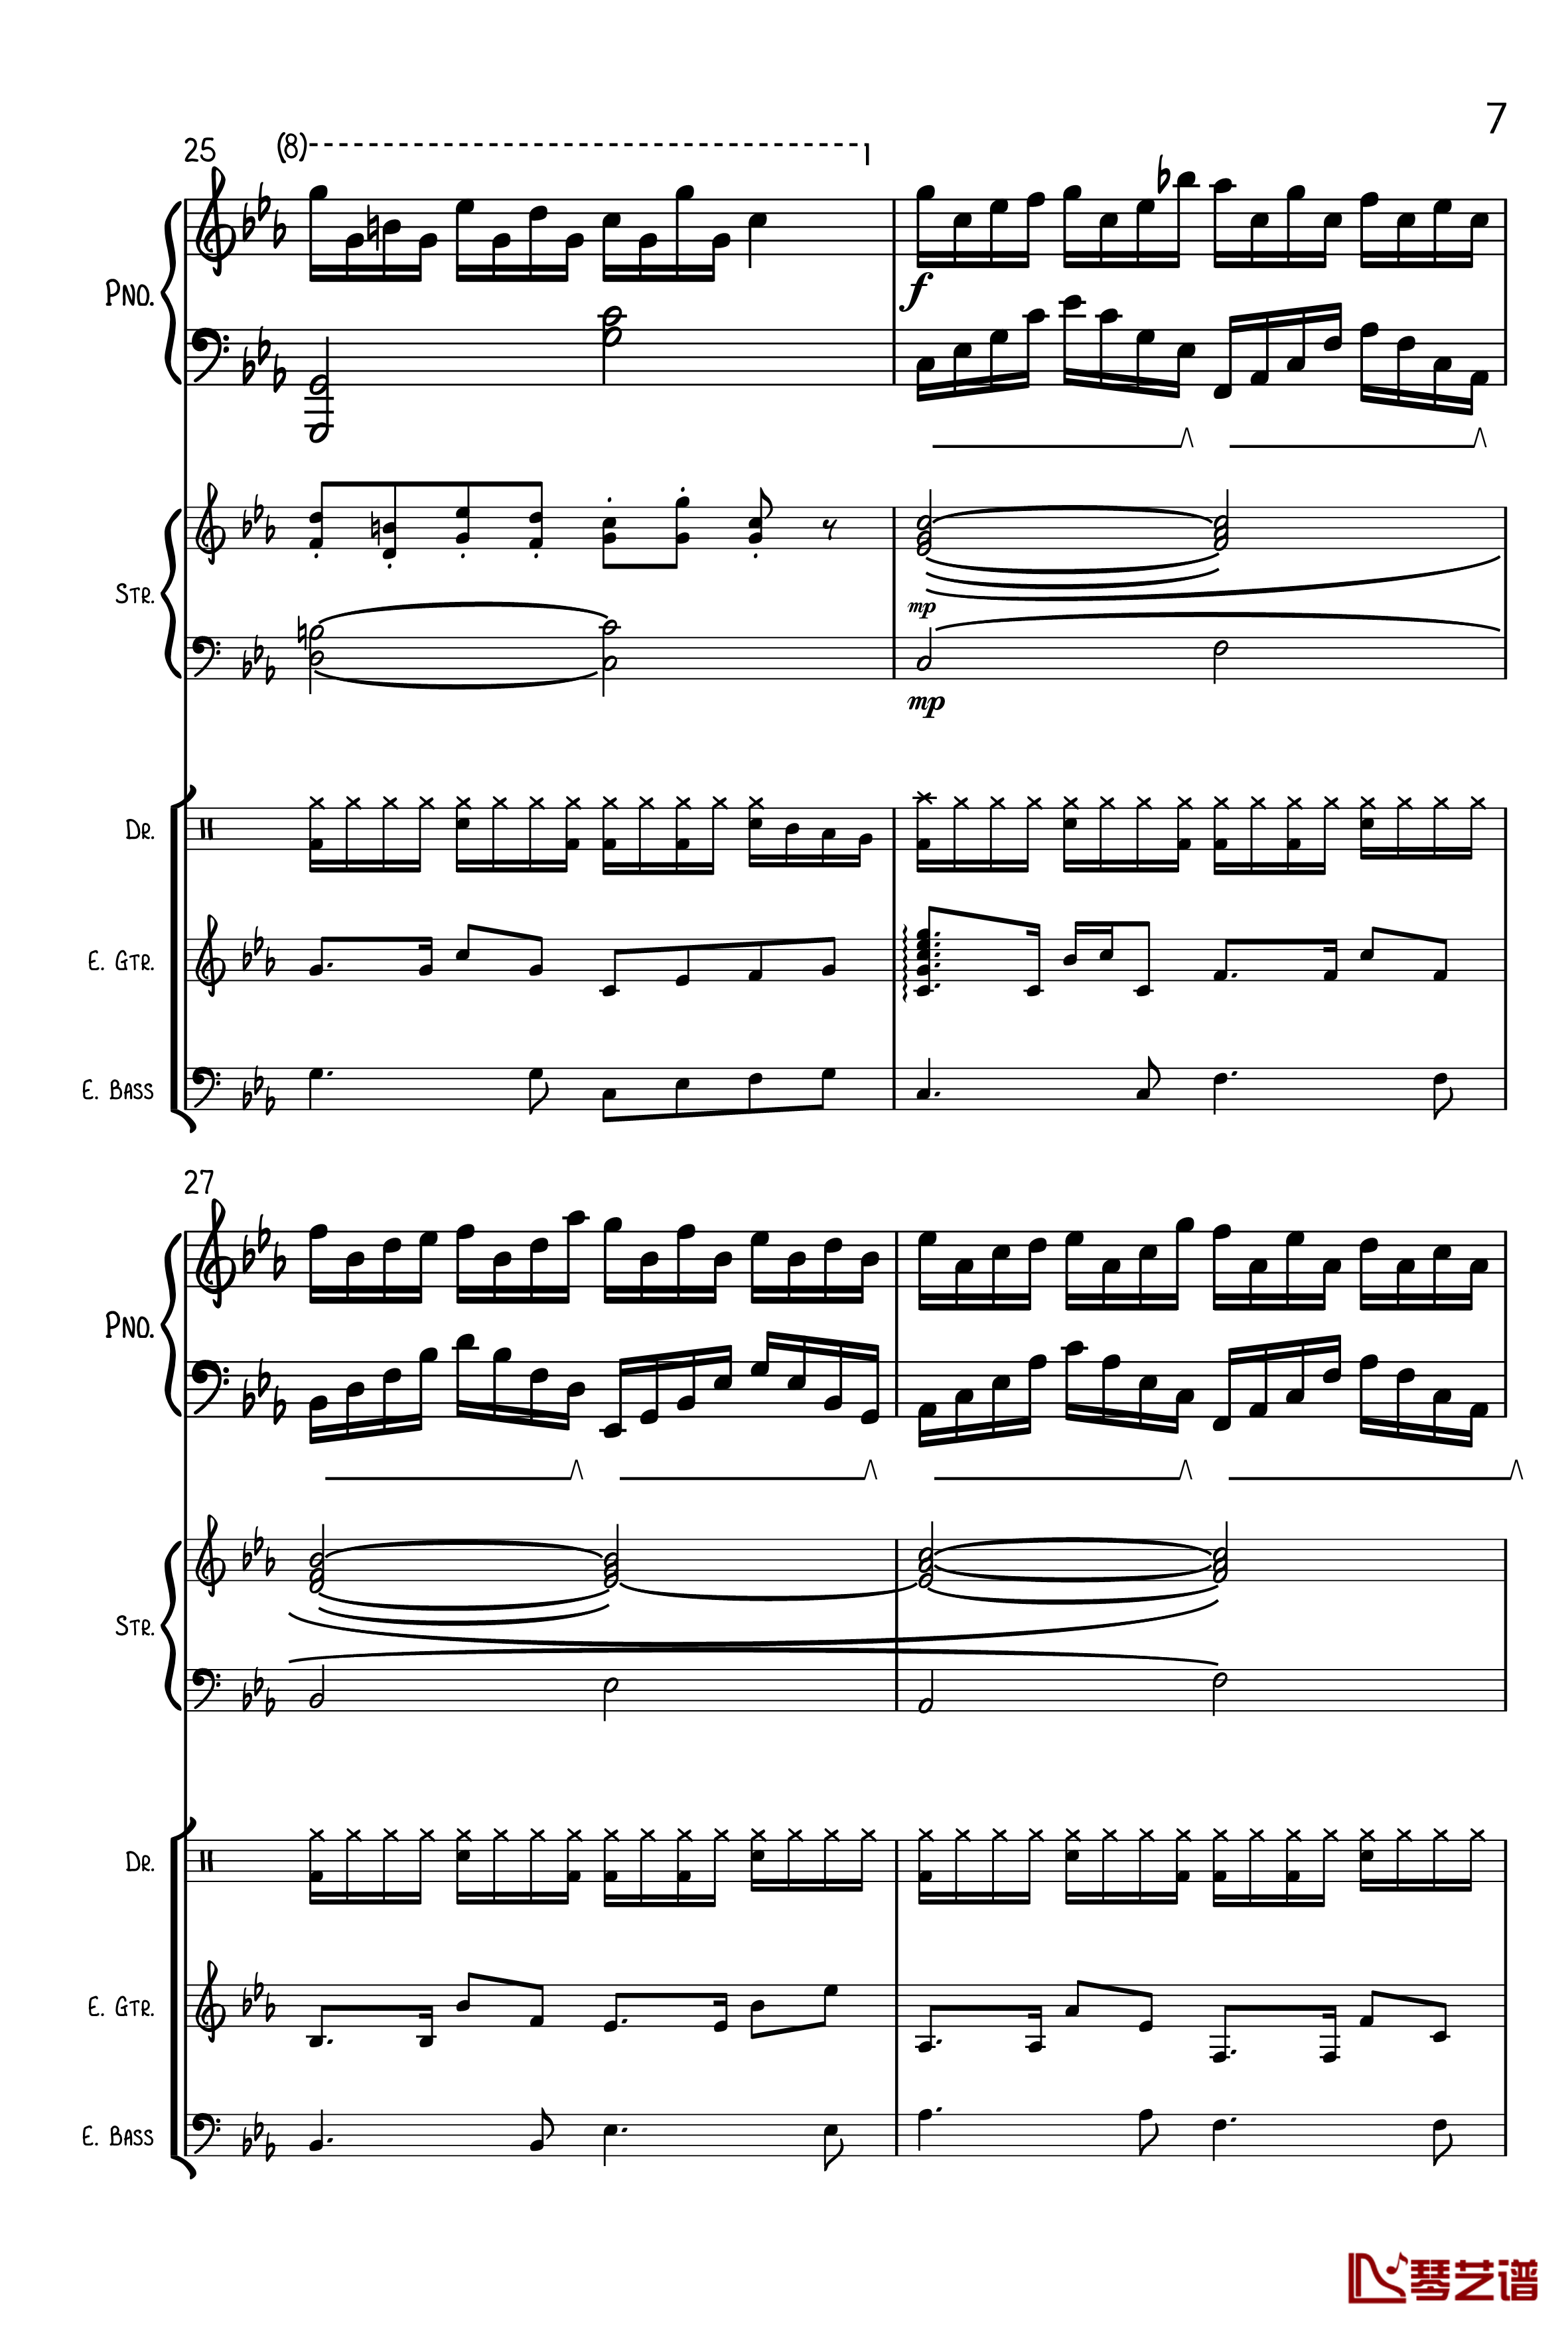 克罗地亚狂想曲钢琴谱-总谱-马克西姆-Maksim·Mrvica7